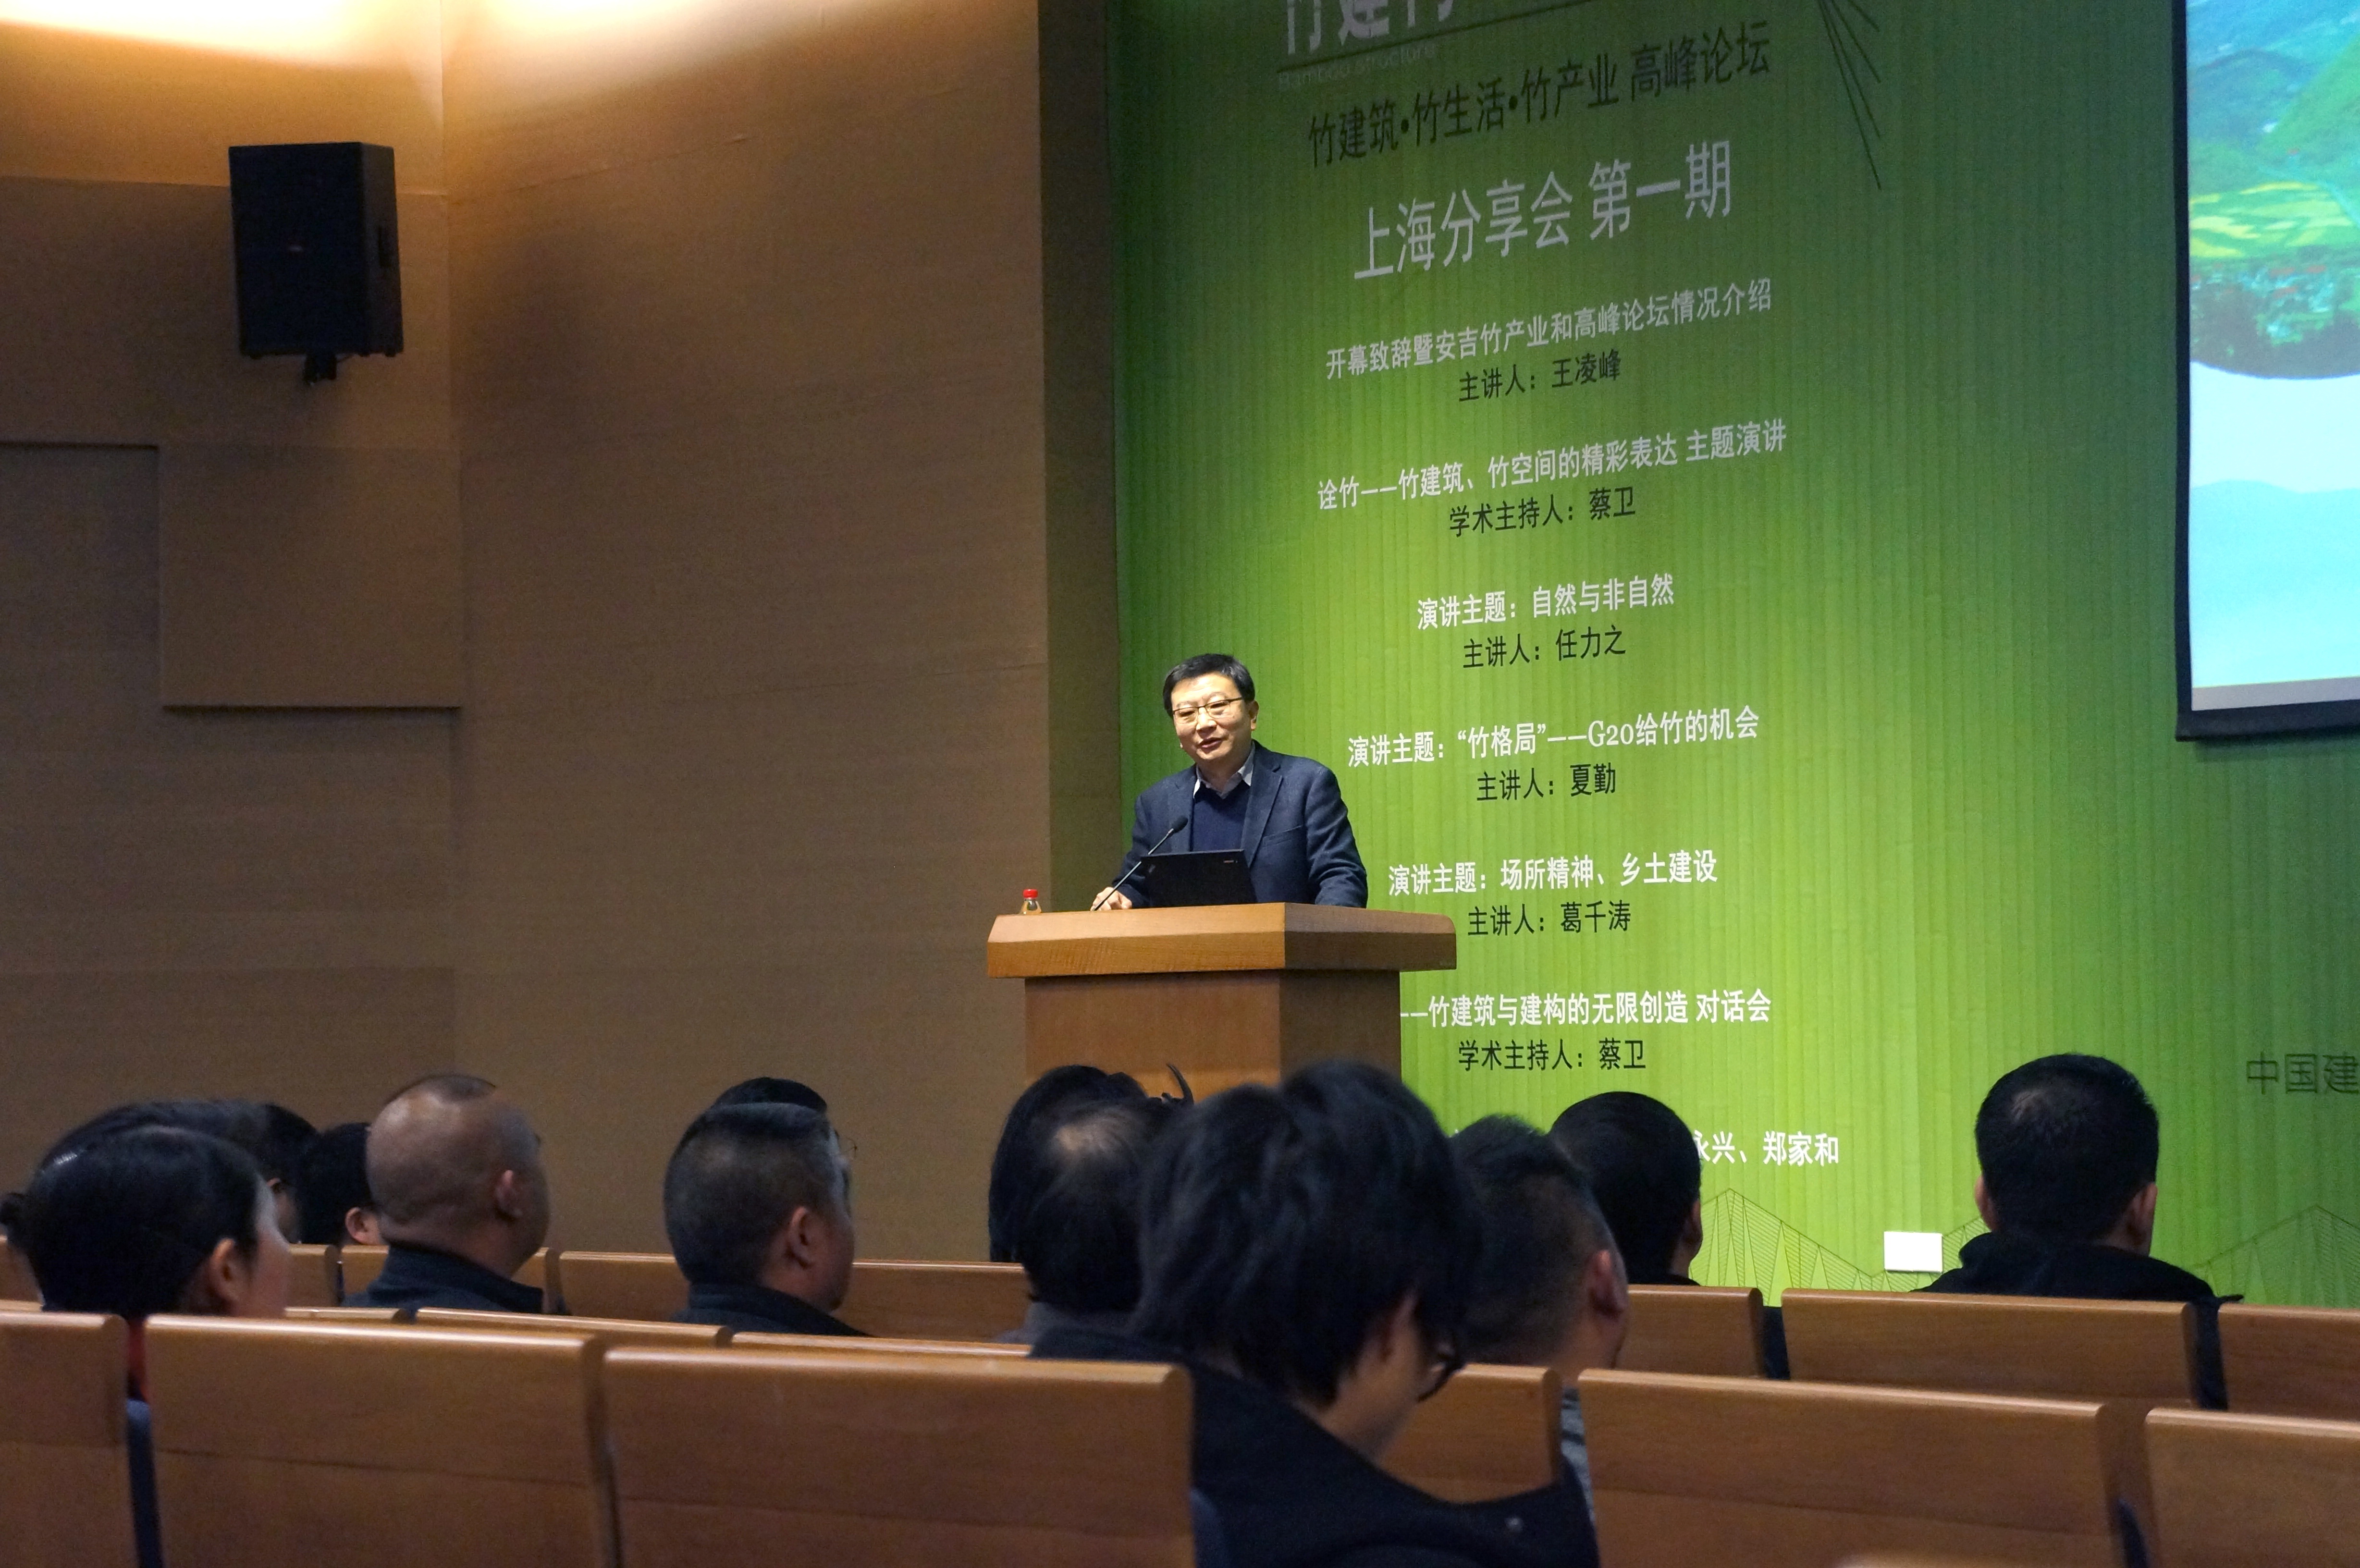 王凌峰先生致开幕辞，并对安吉竹产业和高峰论坛情况做了介绍。